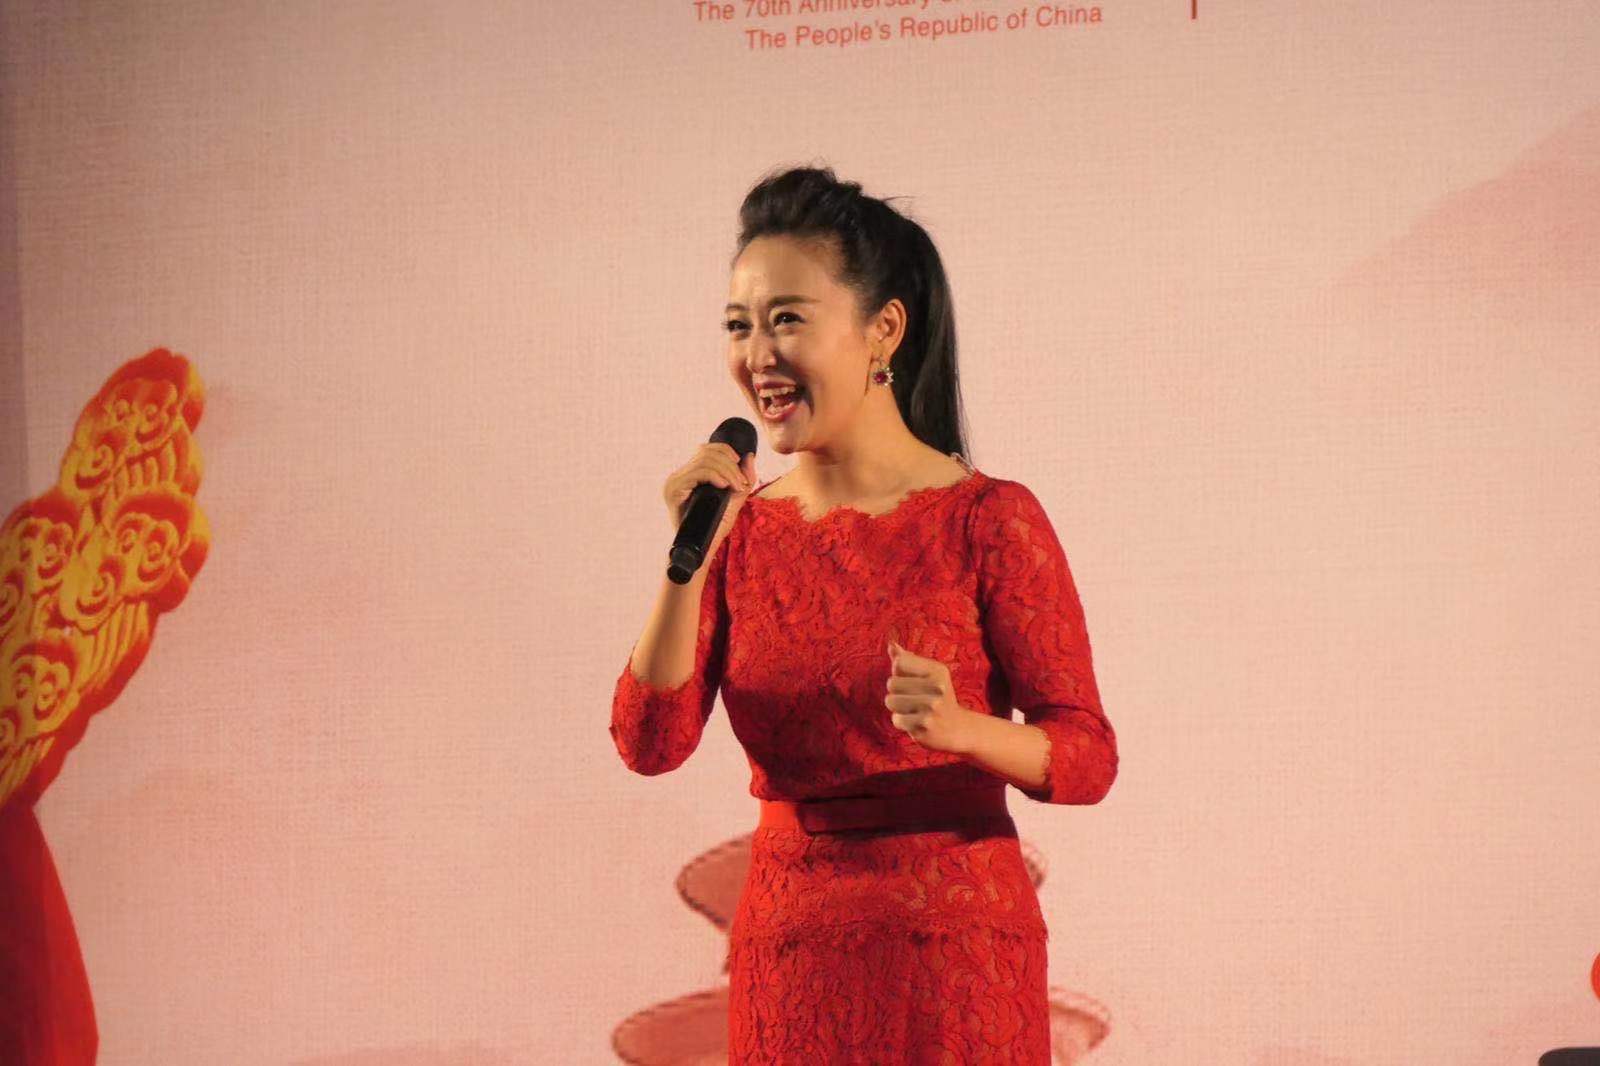 中国一级演员、著名歌唱家周旋女士美妙的歌声下揭开序幕